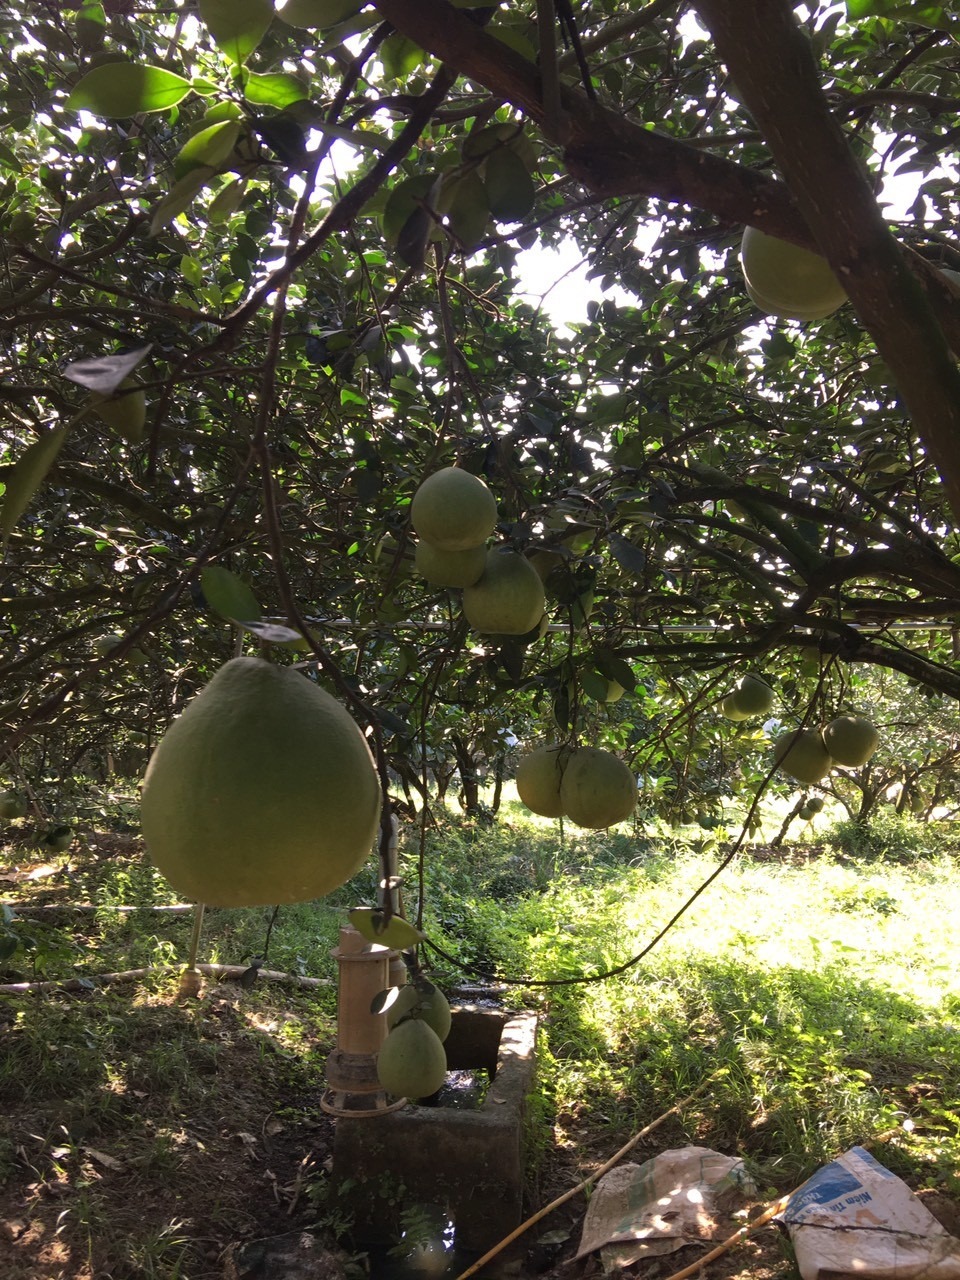 Bưởi da xanh Lâm Đồng thùng 10 trái không thuốc trừ sâu trồng theo hướng hữu cơ sinh học tự nhiên 